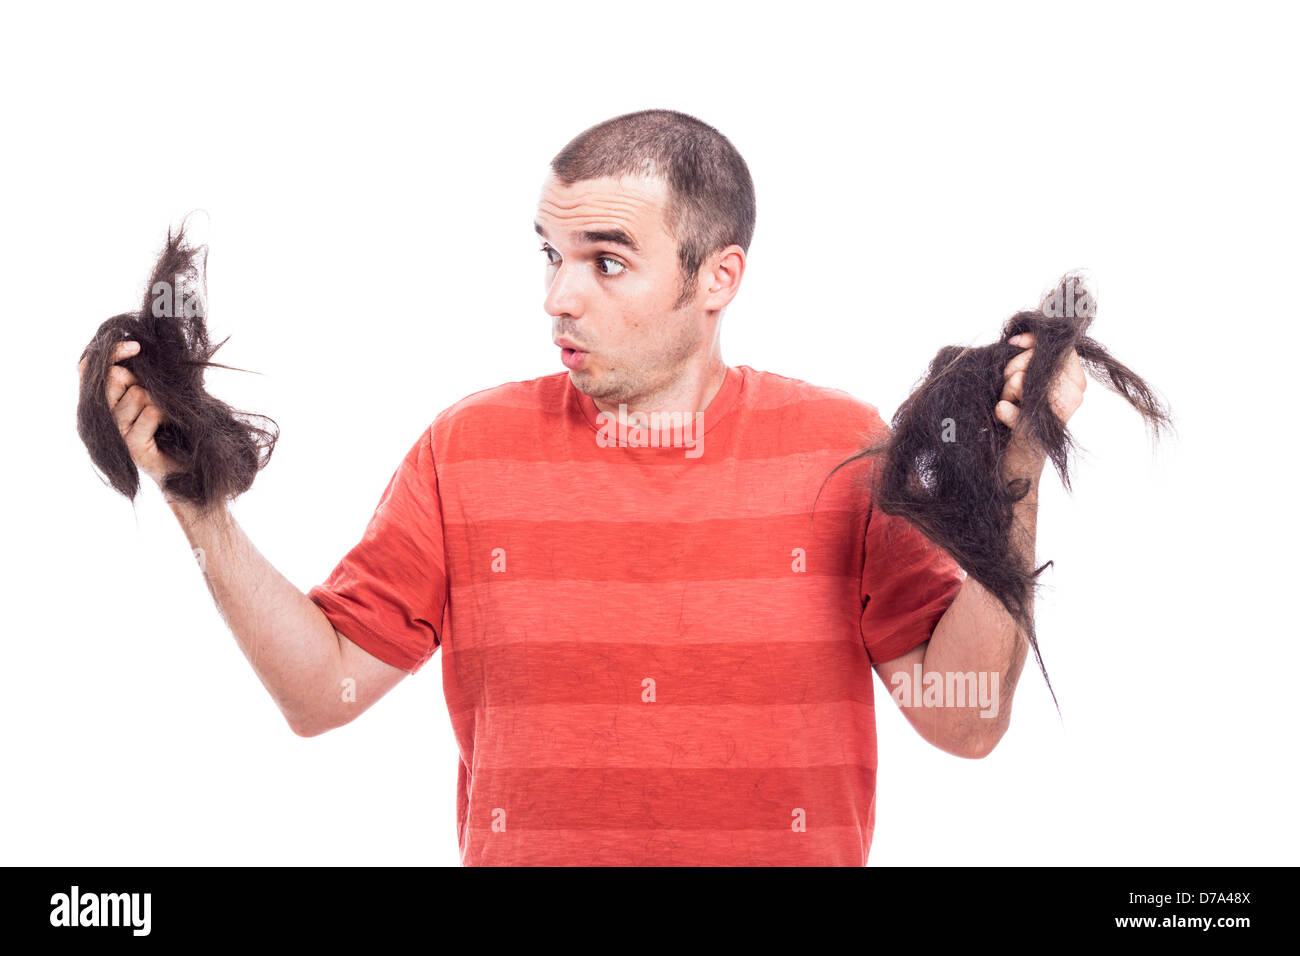 Überrascht, glatzköpfiger Mann hält seine lange rasierte Haare, isoliert auf weißem Hintergrund Stockfoto